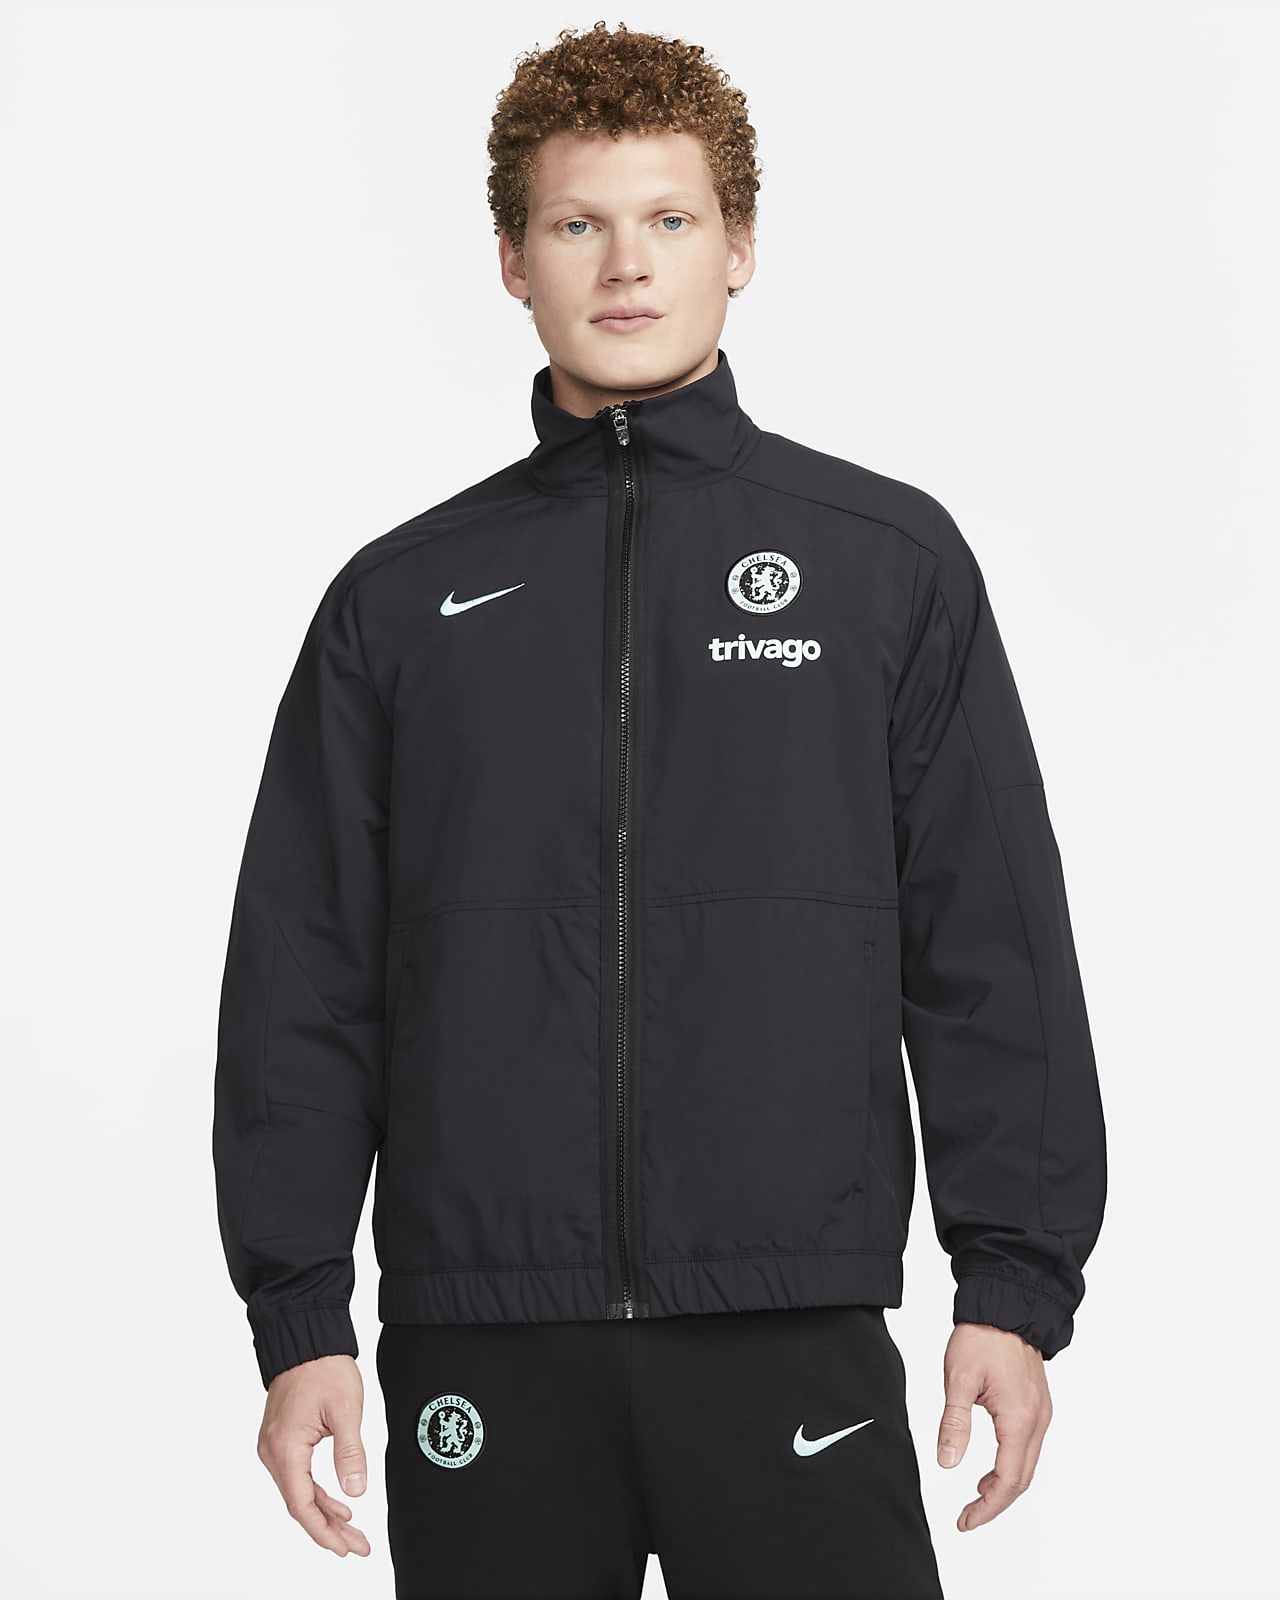 Chelsea FC Revival (tredjedrakt) Vevd Nike Football-jakke til herre